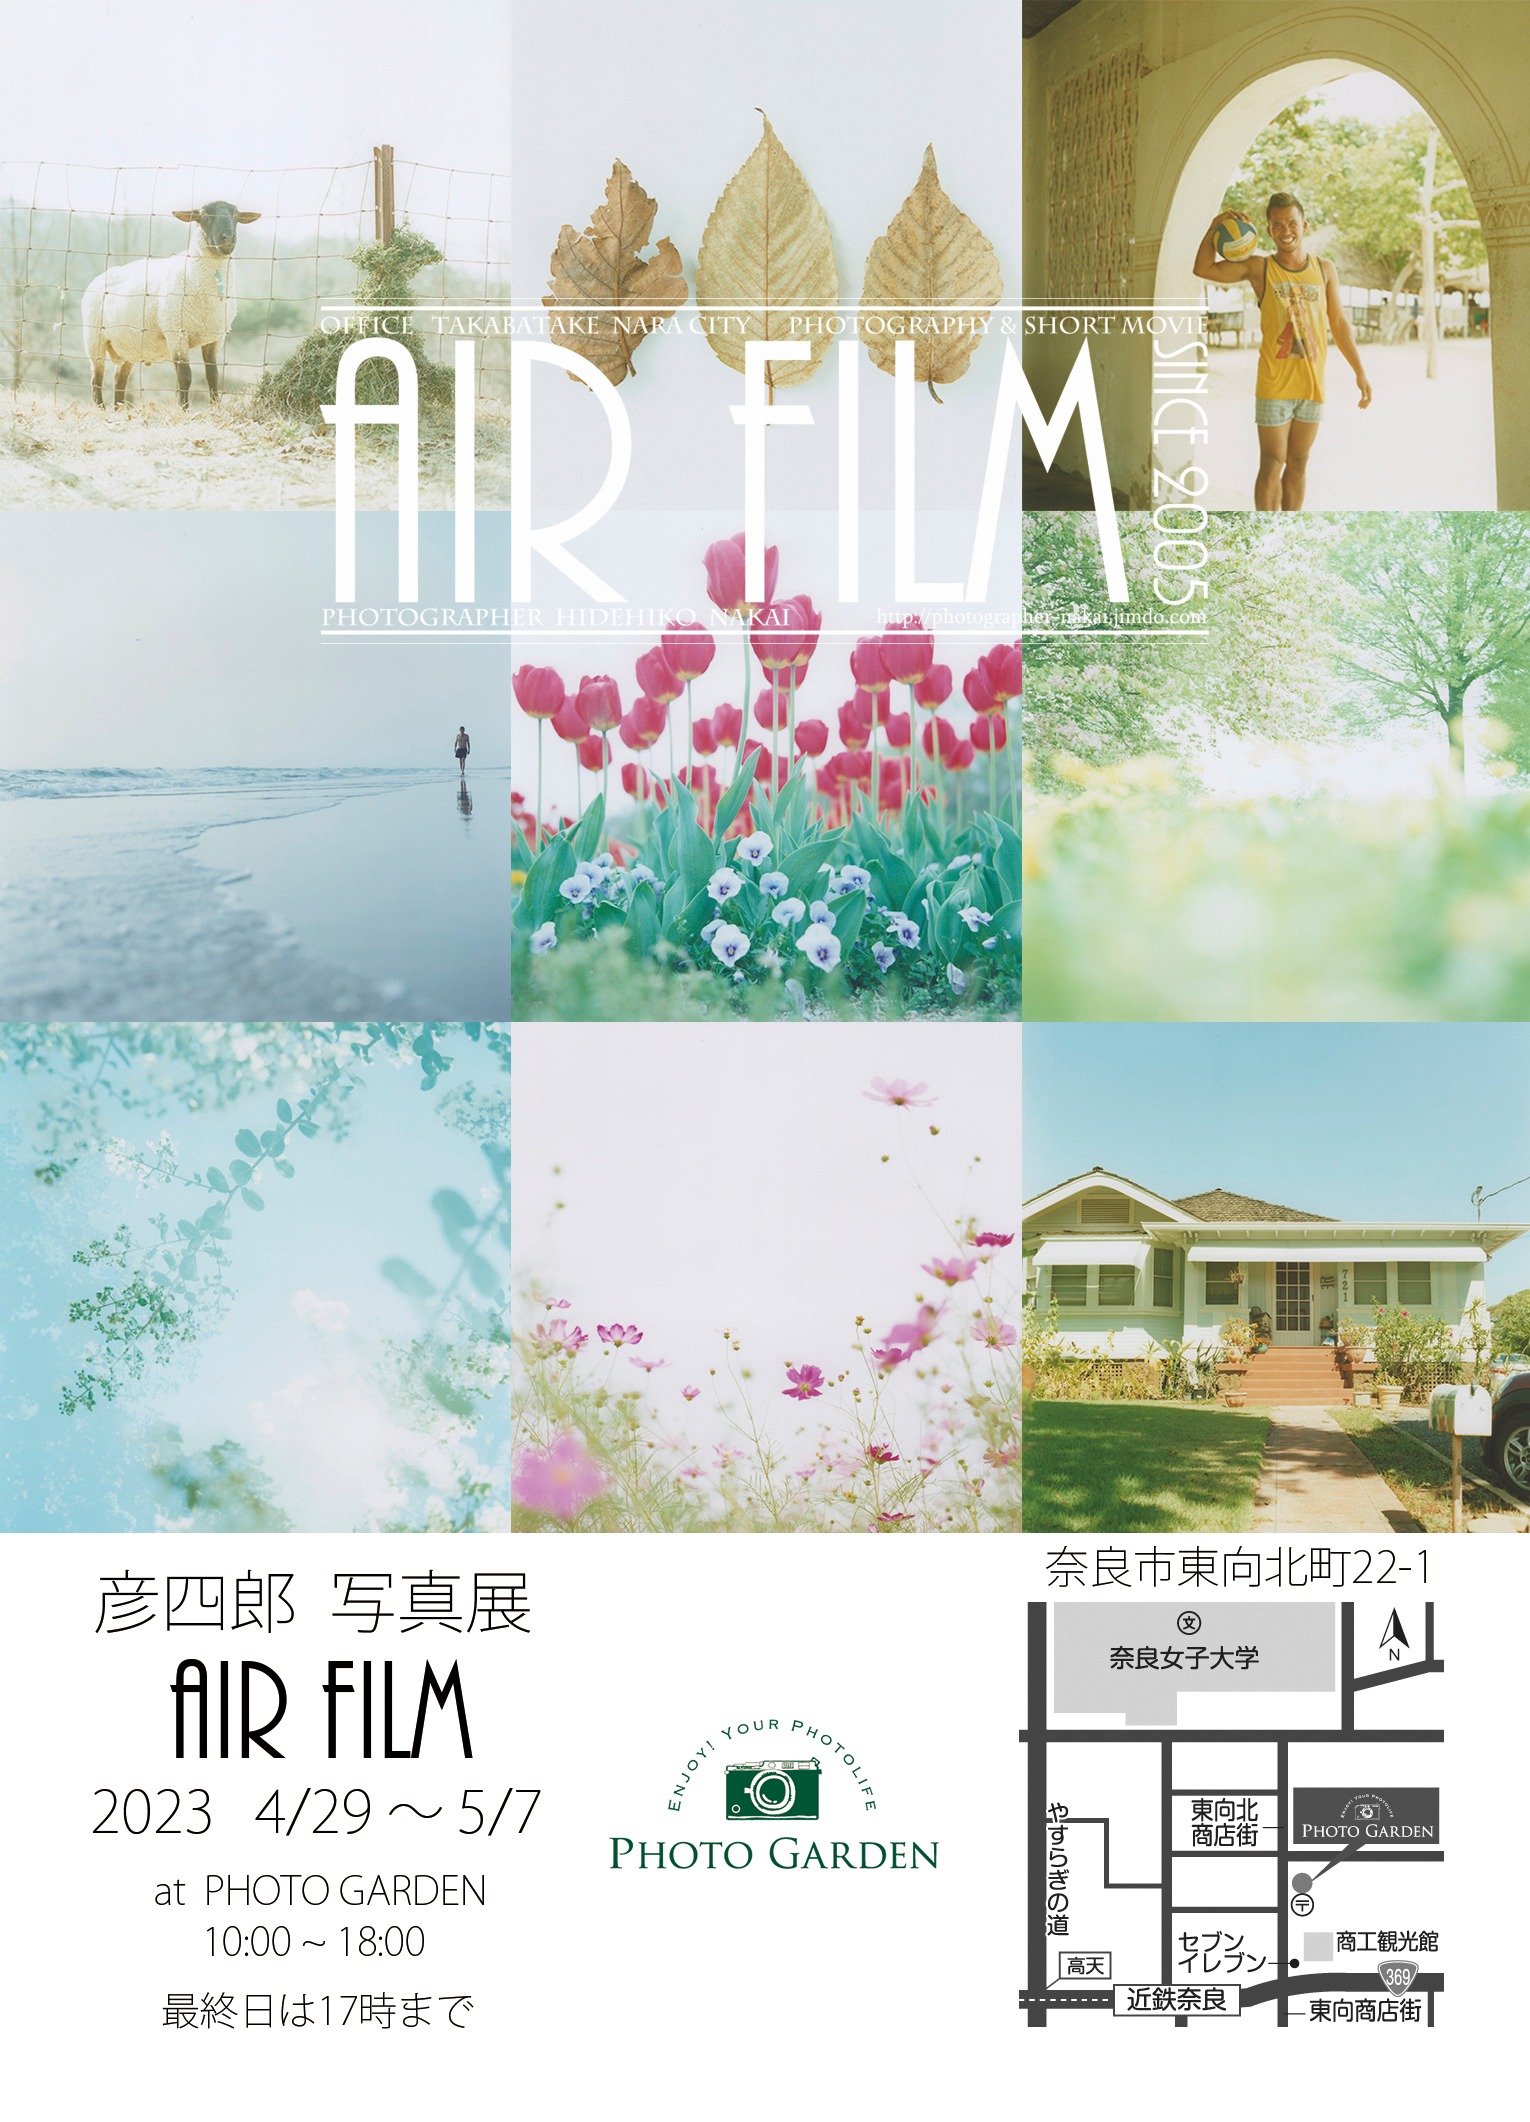 彦四郎 写真展『AIR FILM』